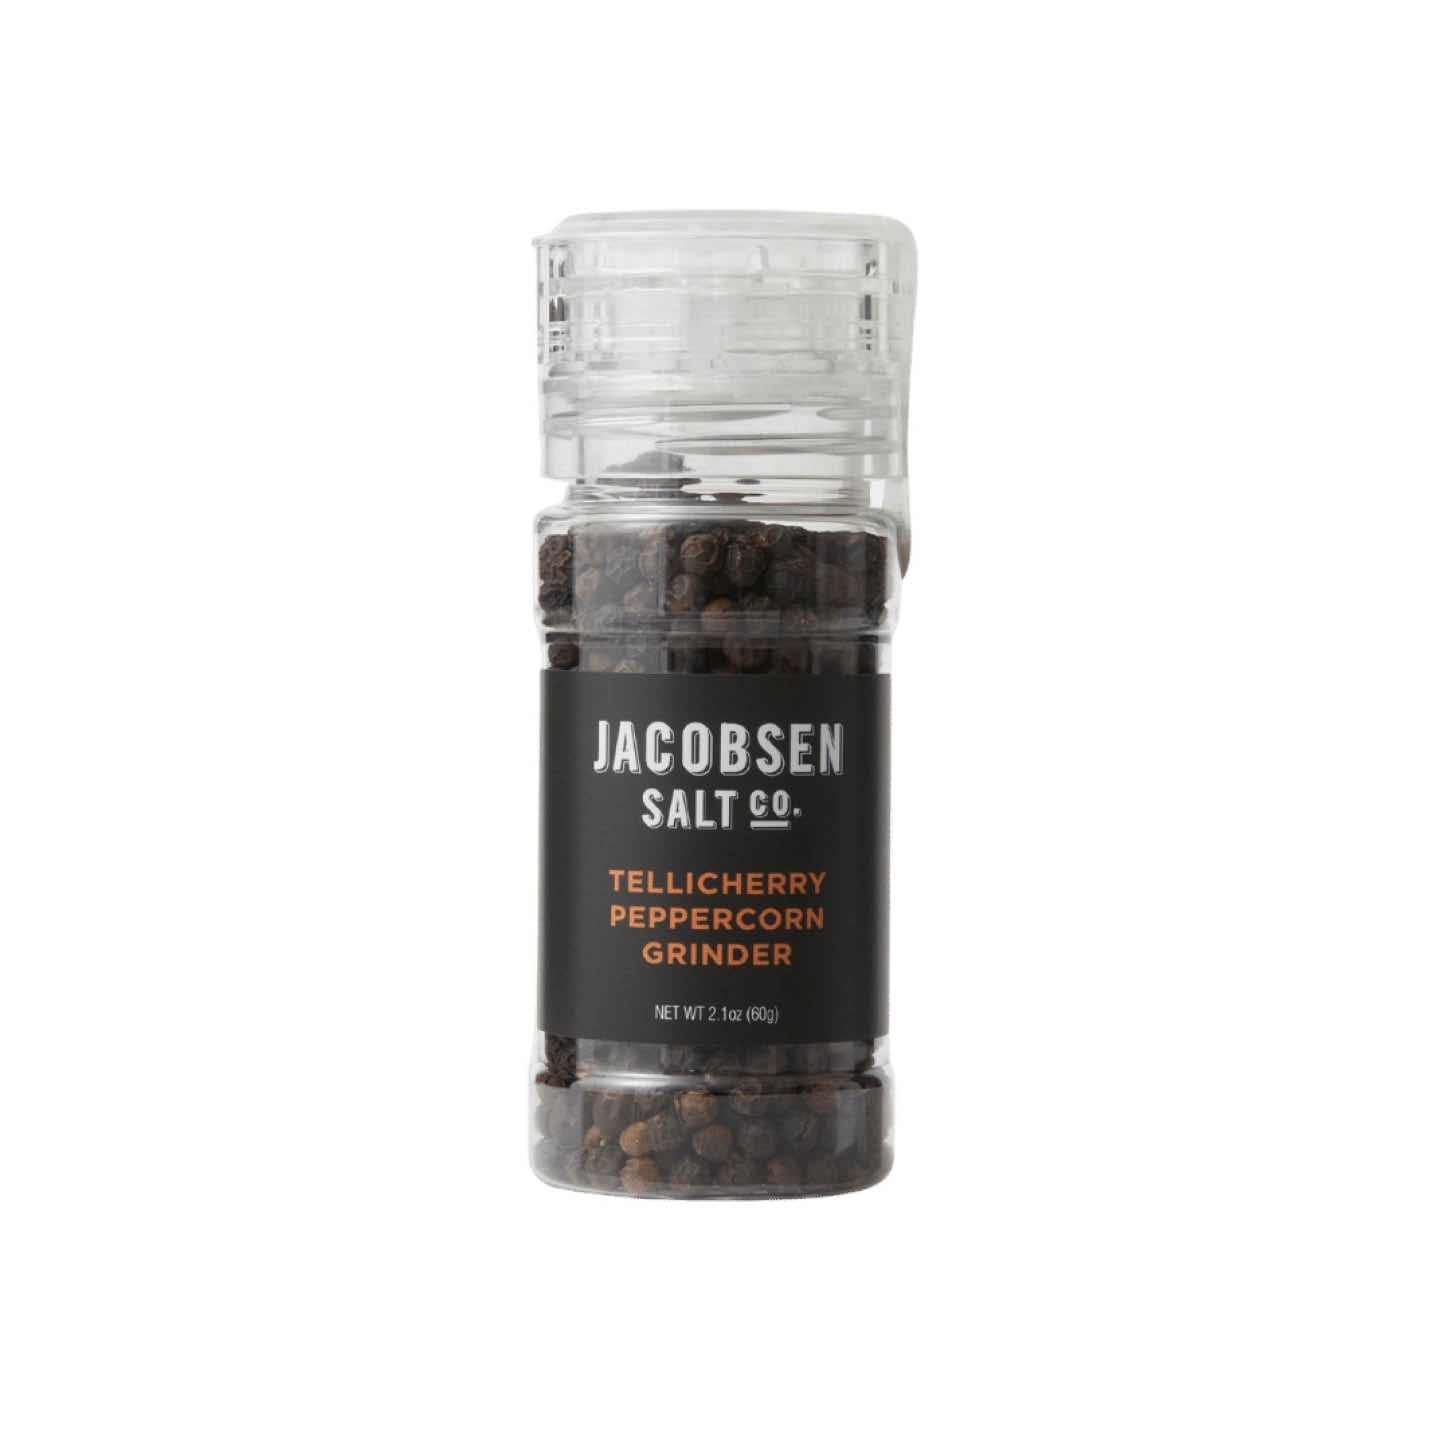 https://dundoreandheister.com/cdn/shop/products/dundore-heister-market-seasonings_rubs-jacobsen-salt-co-tellicherry-peppercorn-grinder_1450x.jpg?v=1631155883